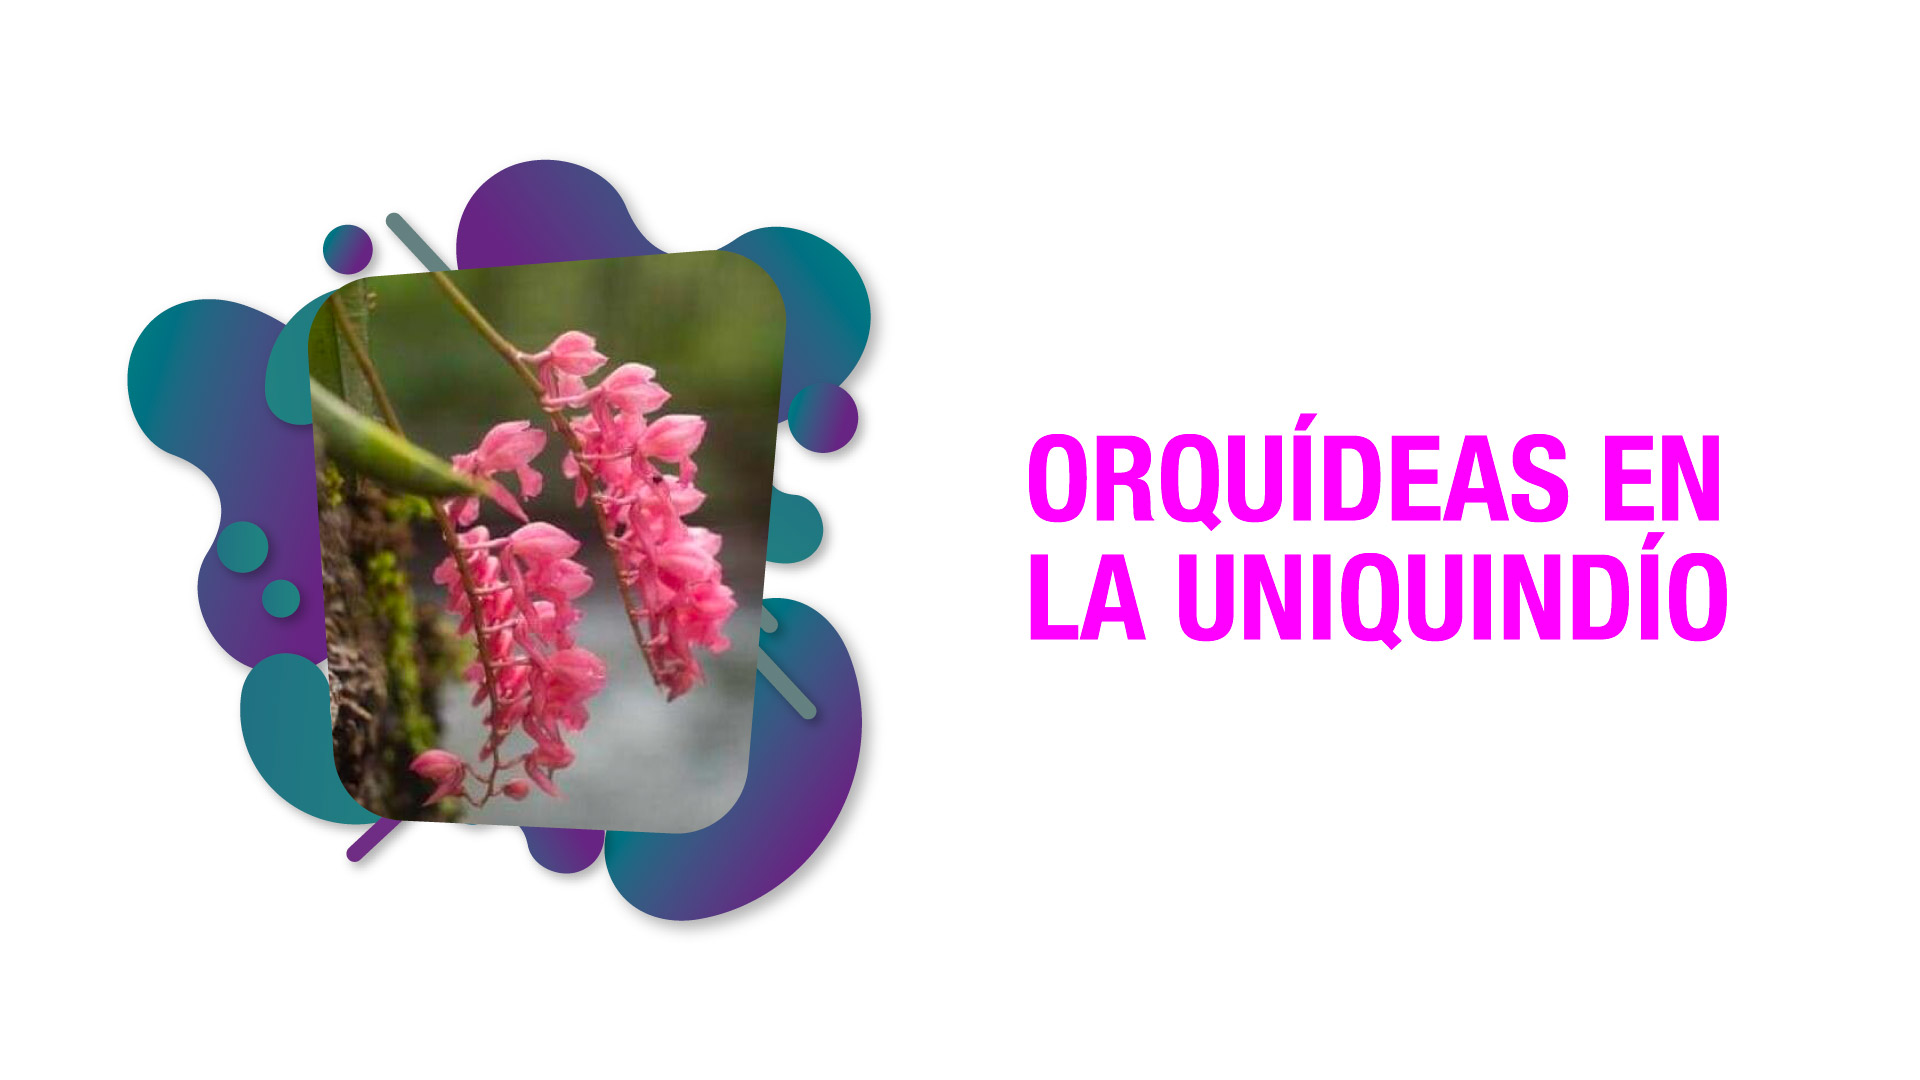 La orquídea, una especie emblemática que se conserva en el alma mater